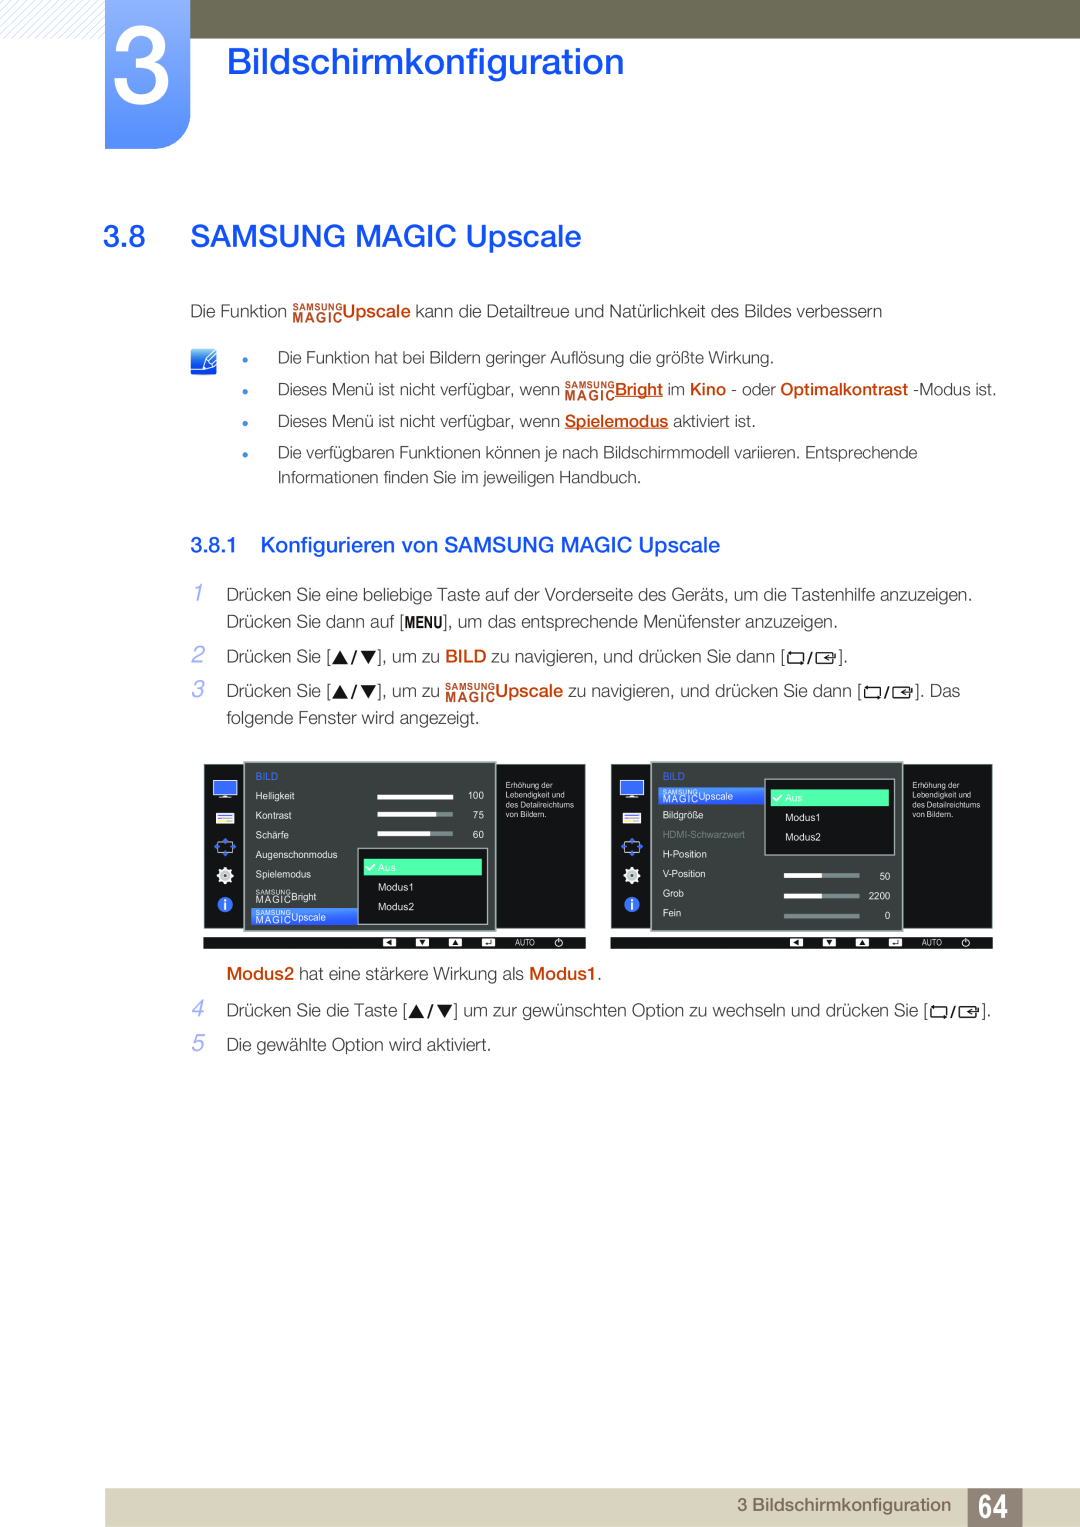 Samsung LS24E65KBWV/EN, LS23E65UDC/EN, LS24E45UDLC/EN Konfigurieren von SAMSUNG MAGIC Upscale, Bildschirmkonfiguration 